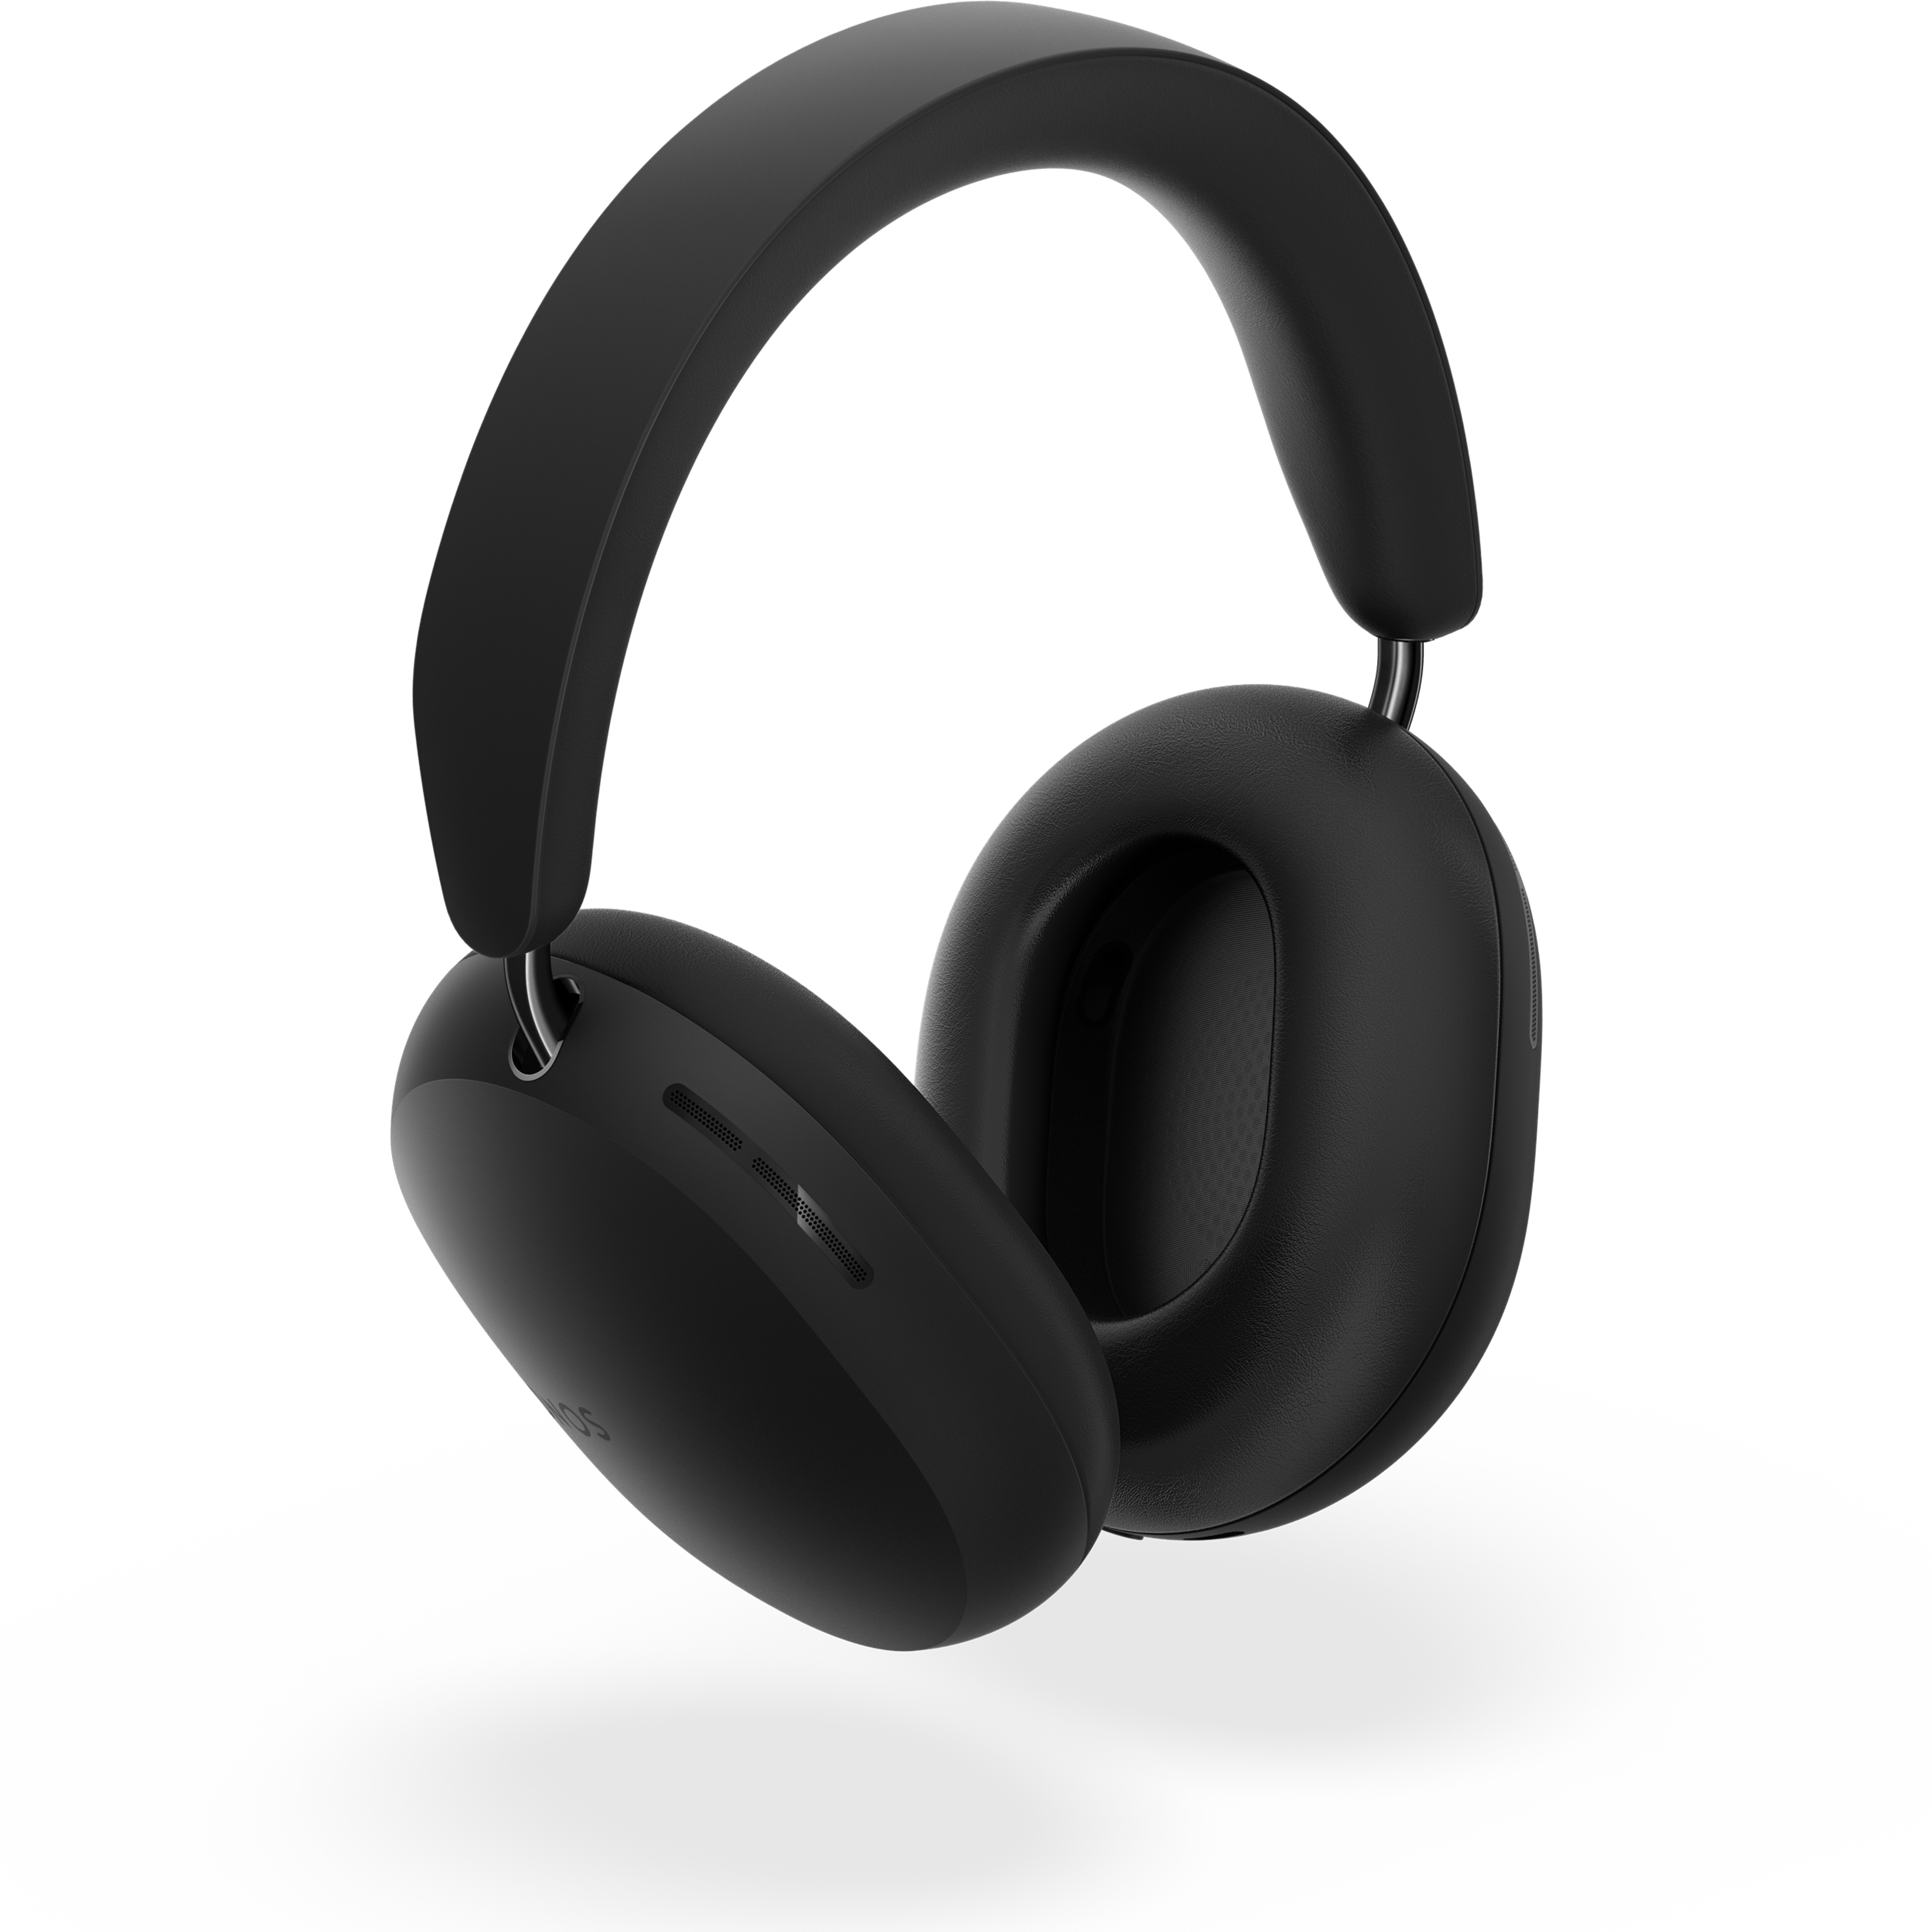 Audífonos Sonos Ace en negro ligeramente girados, suspendidos sobre su sombra